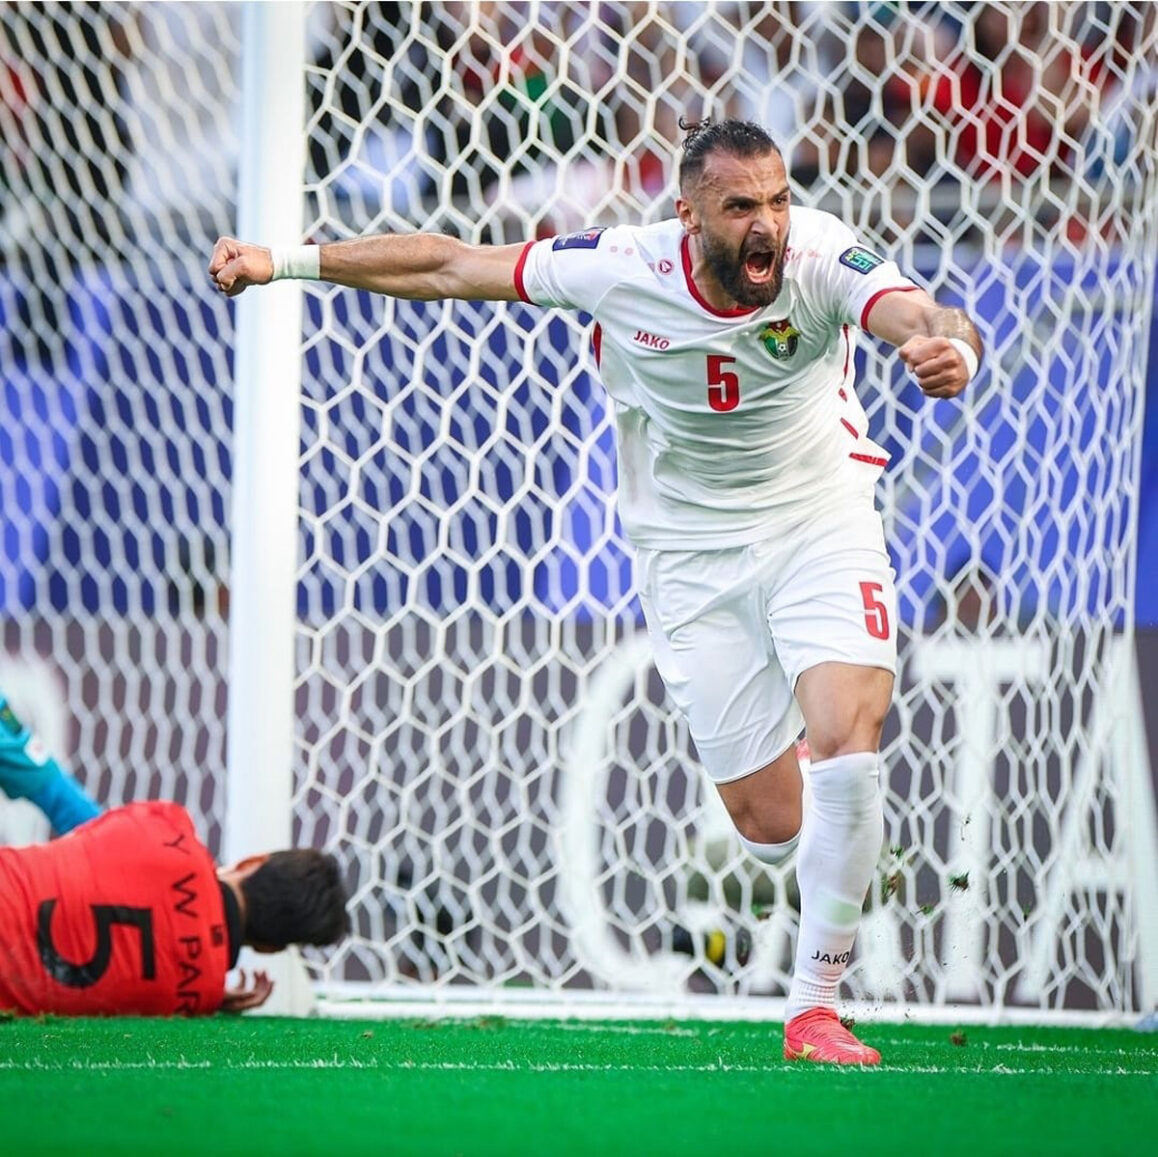  لاعب المنتخب الوطني يزن العرب يتعاقد مع معيذر القطري